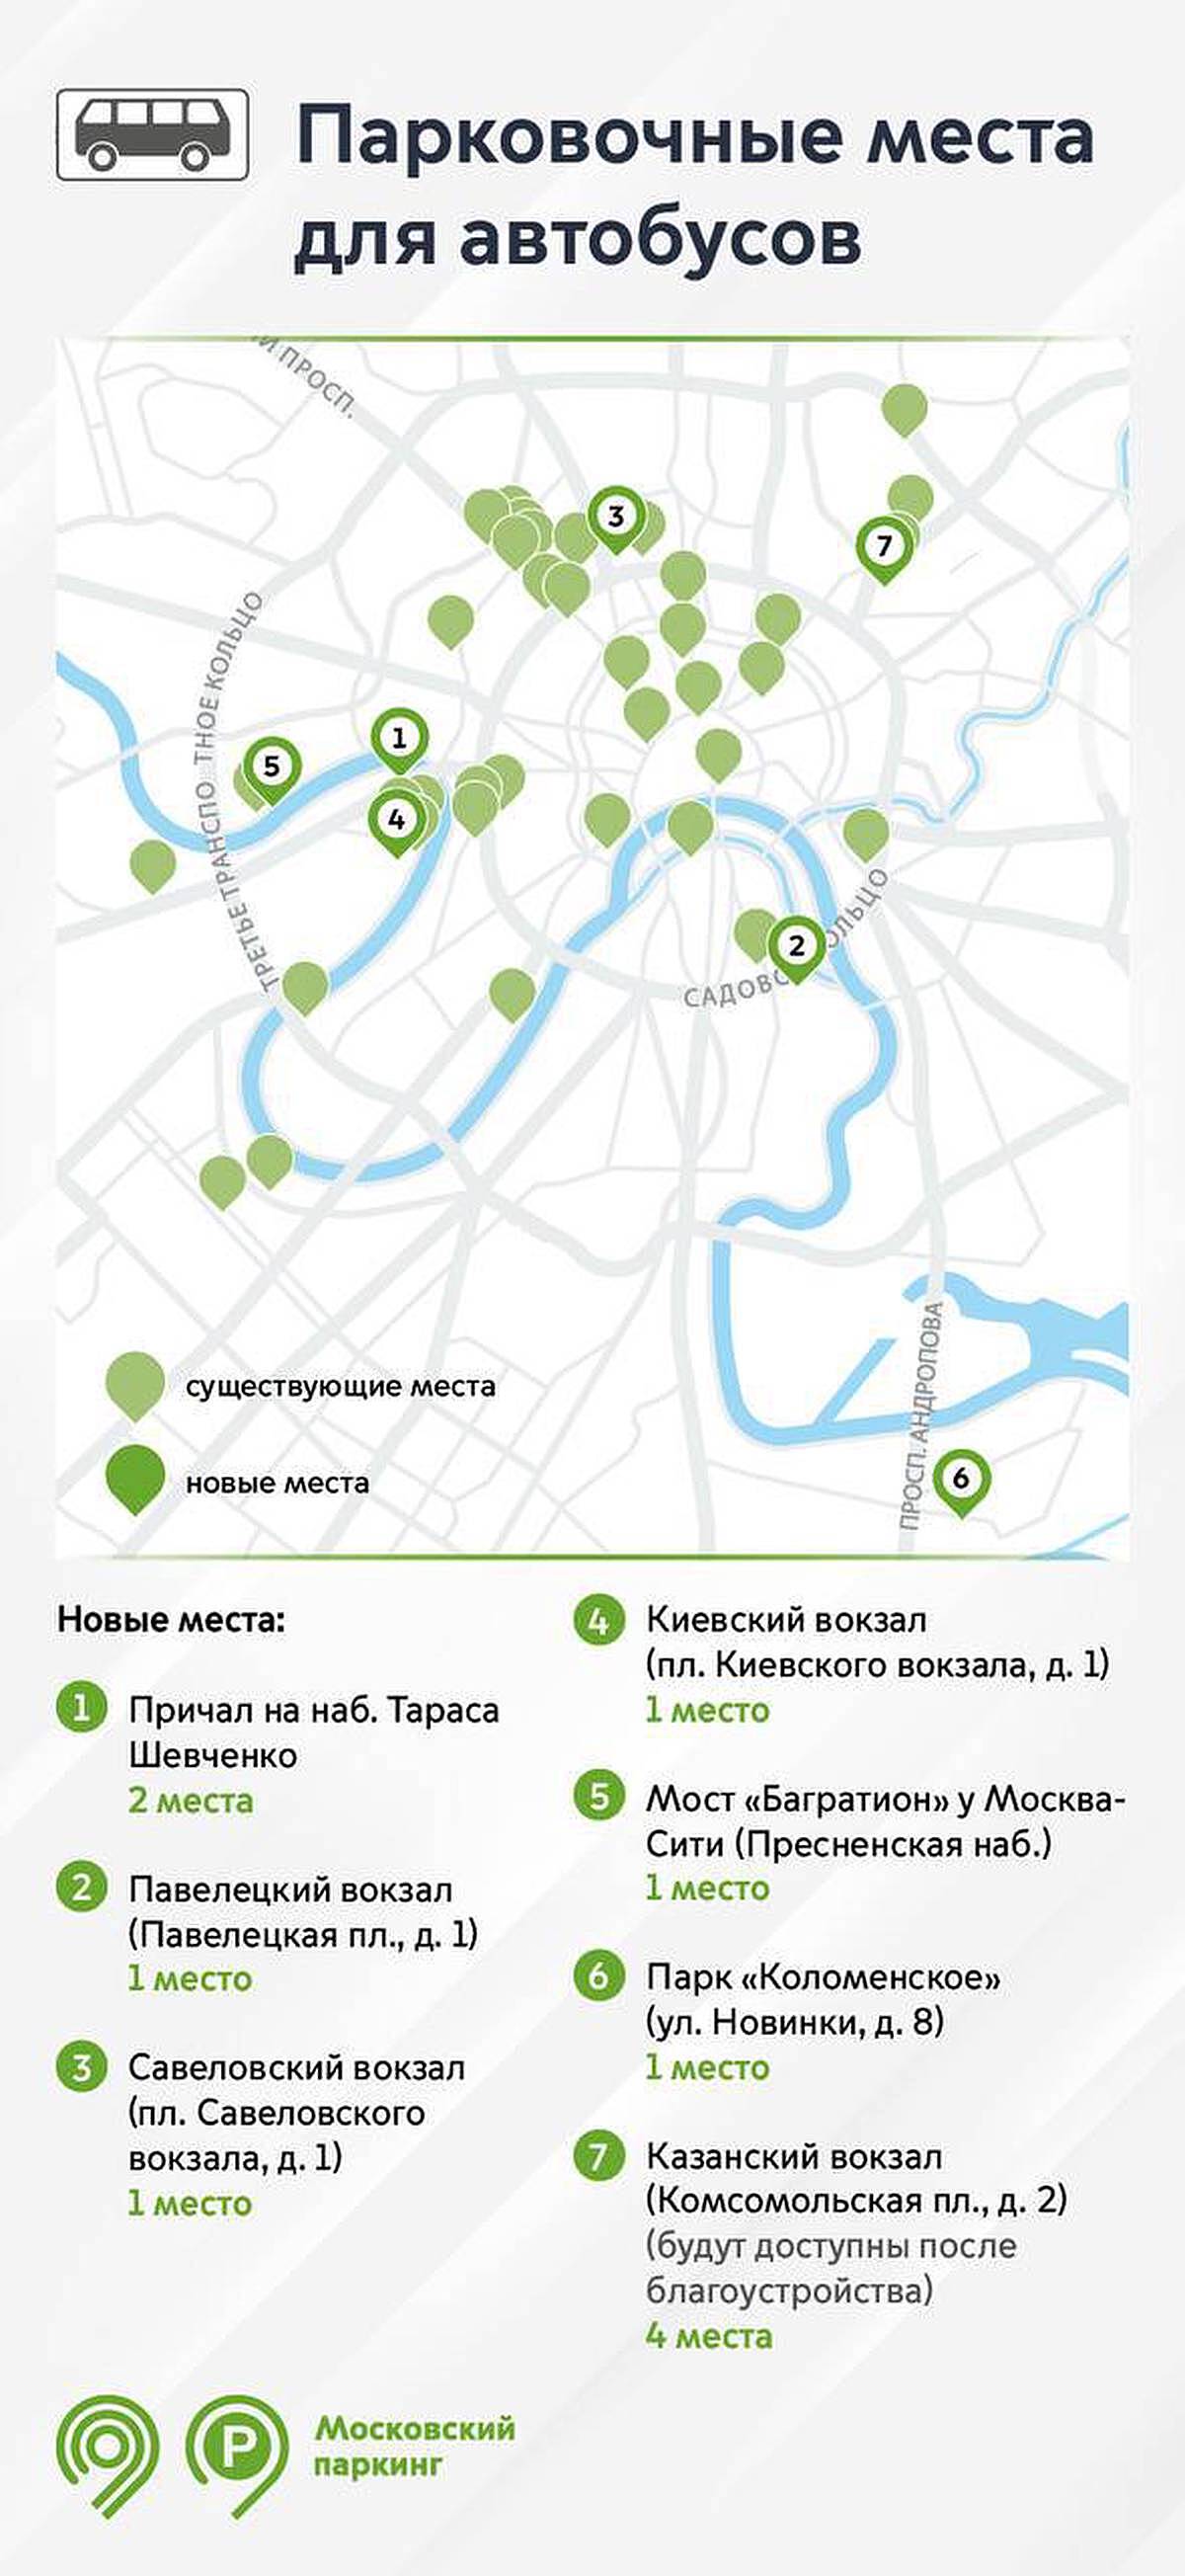 Еще четыре парковки для грузовиков обустроят в Москве до конца мая